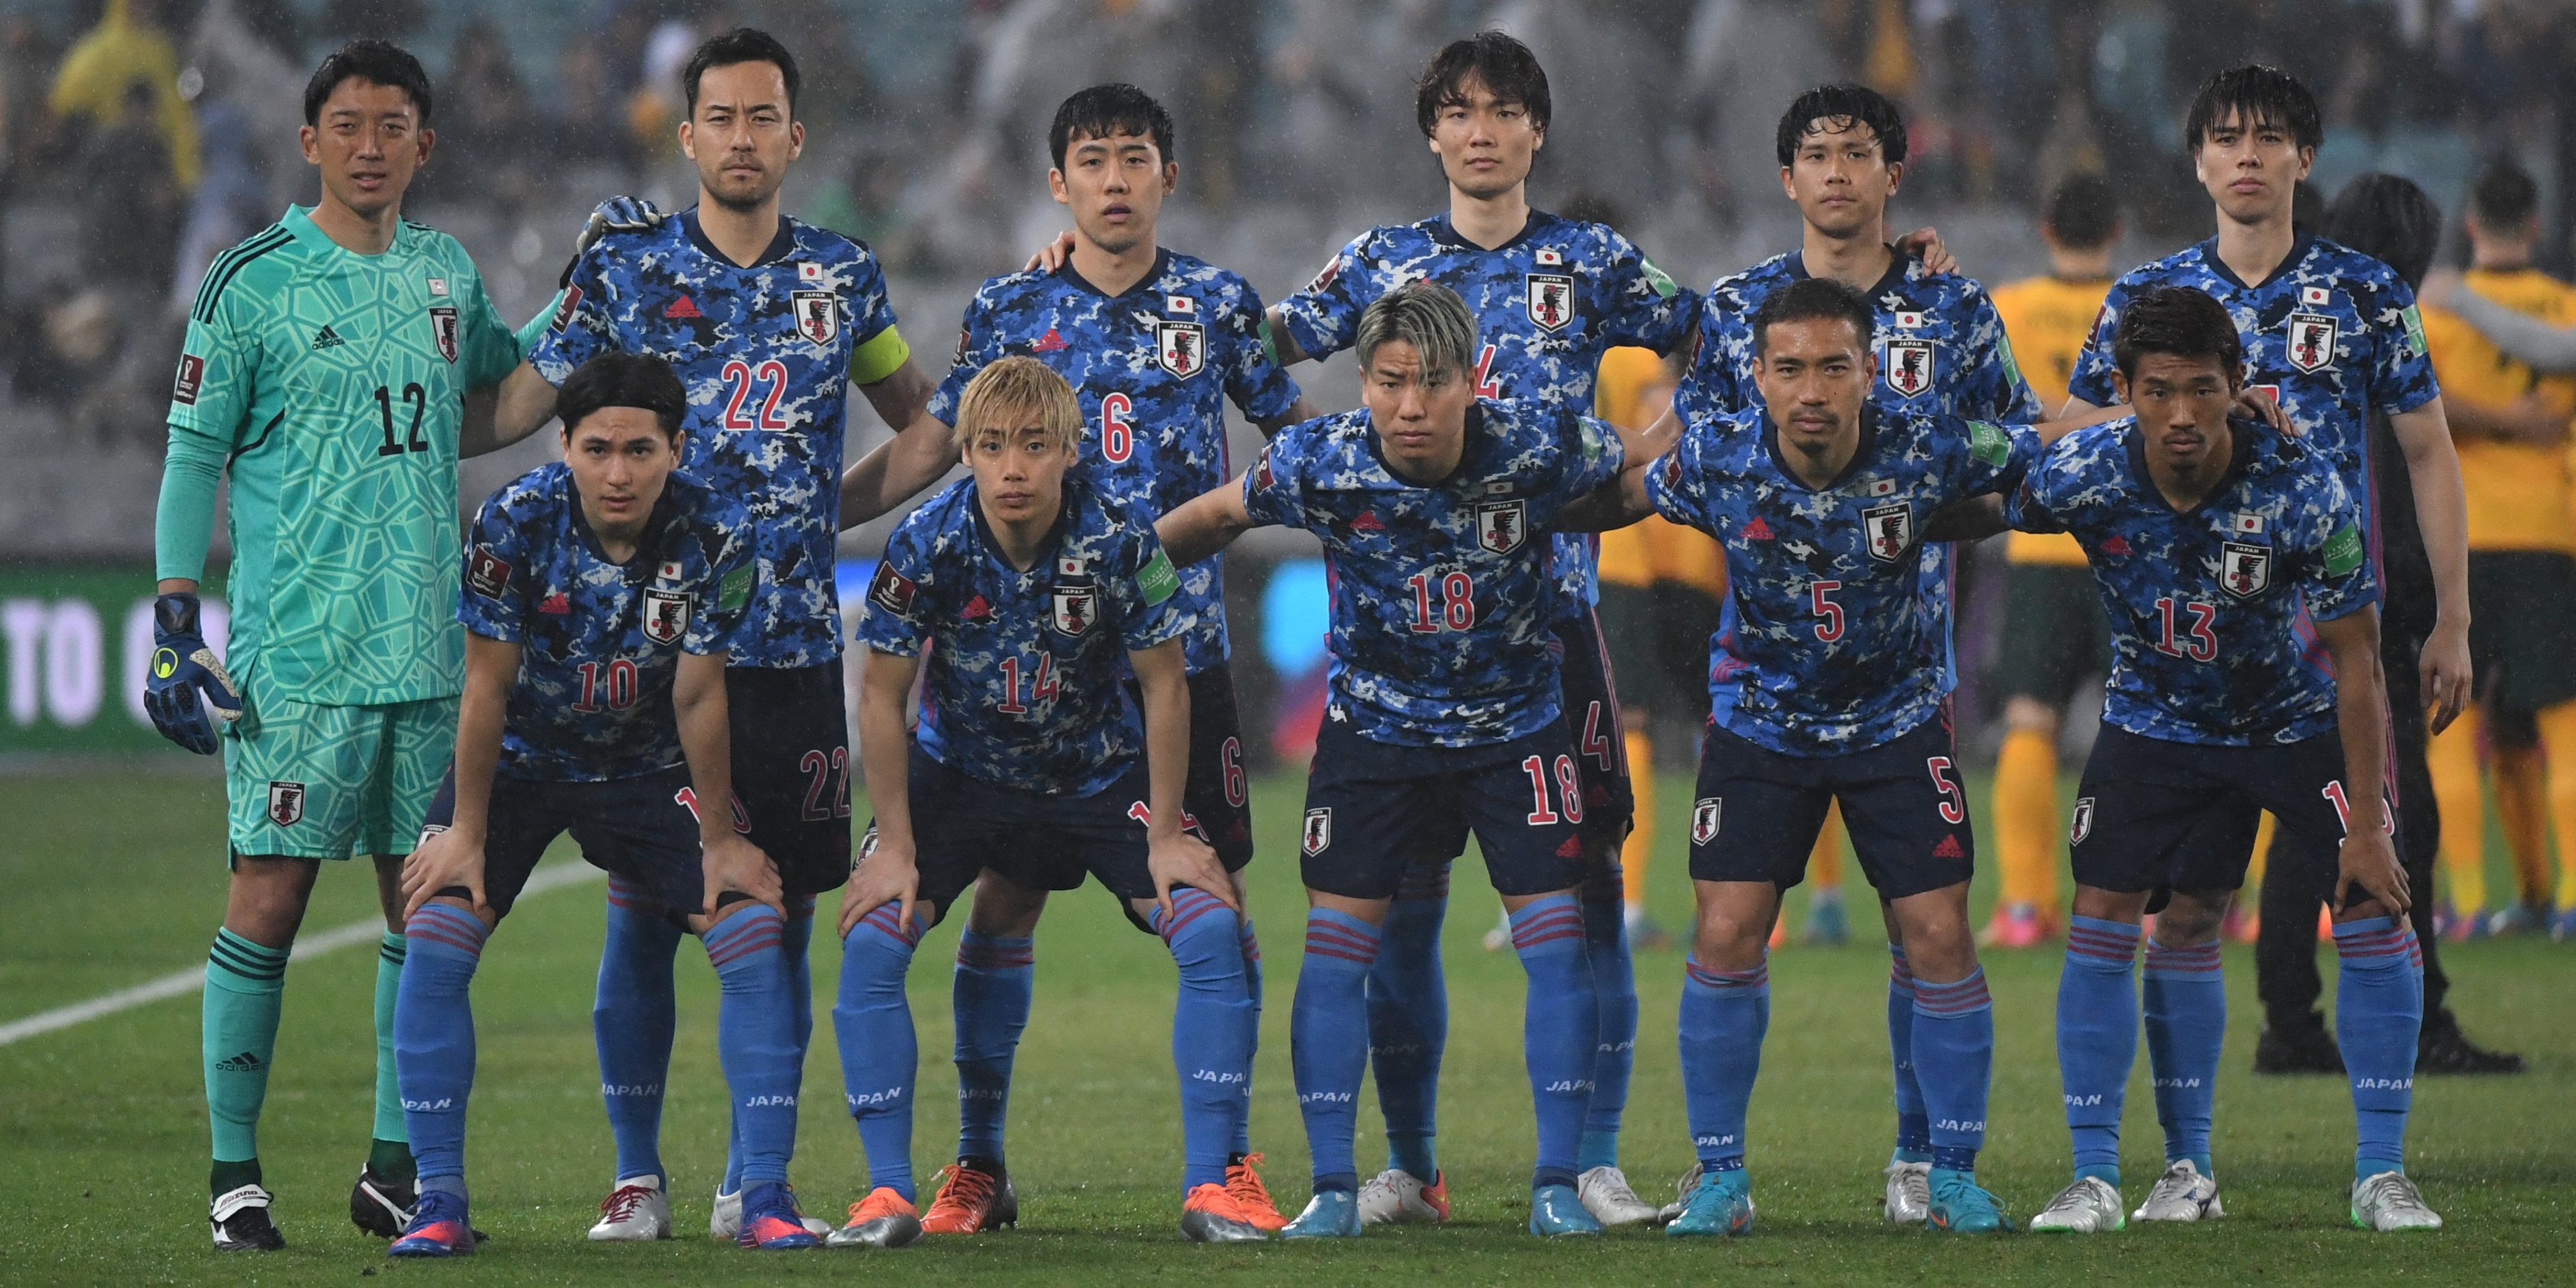 Análise da temporada 2018 da J-League, Futebol no Japão